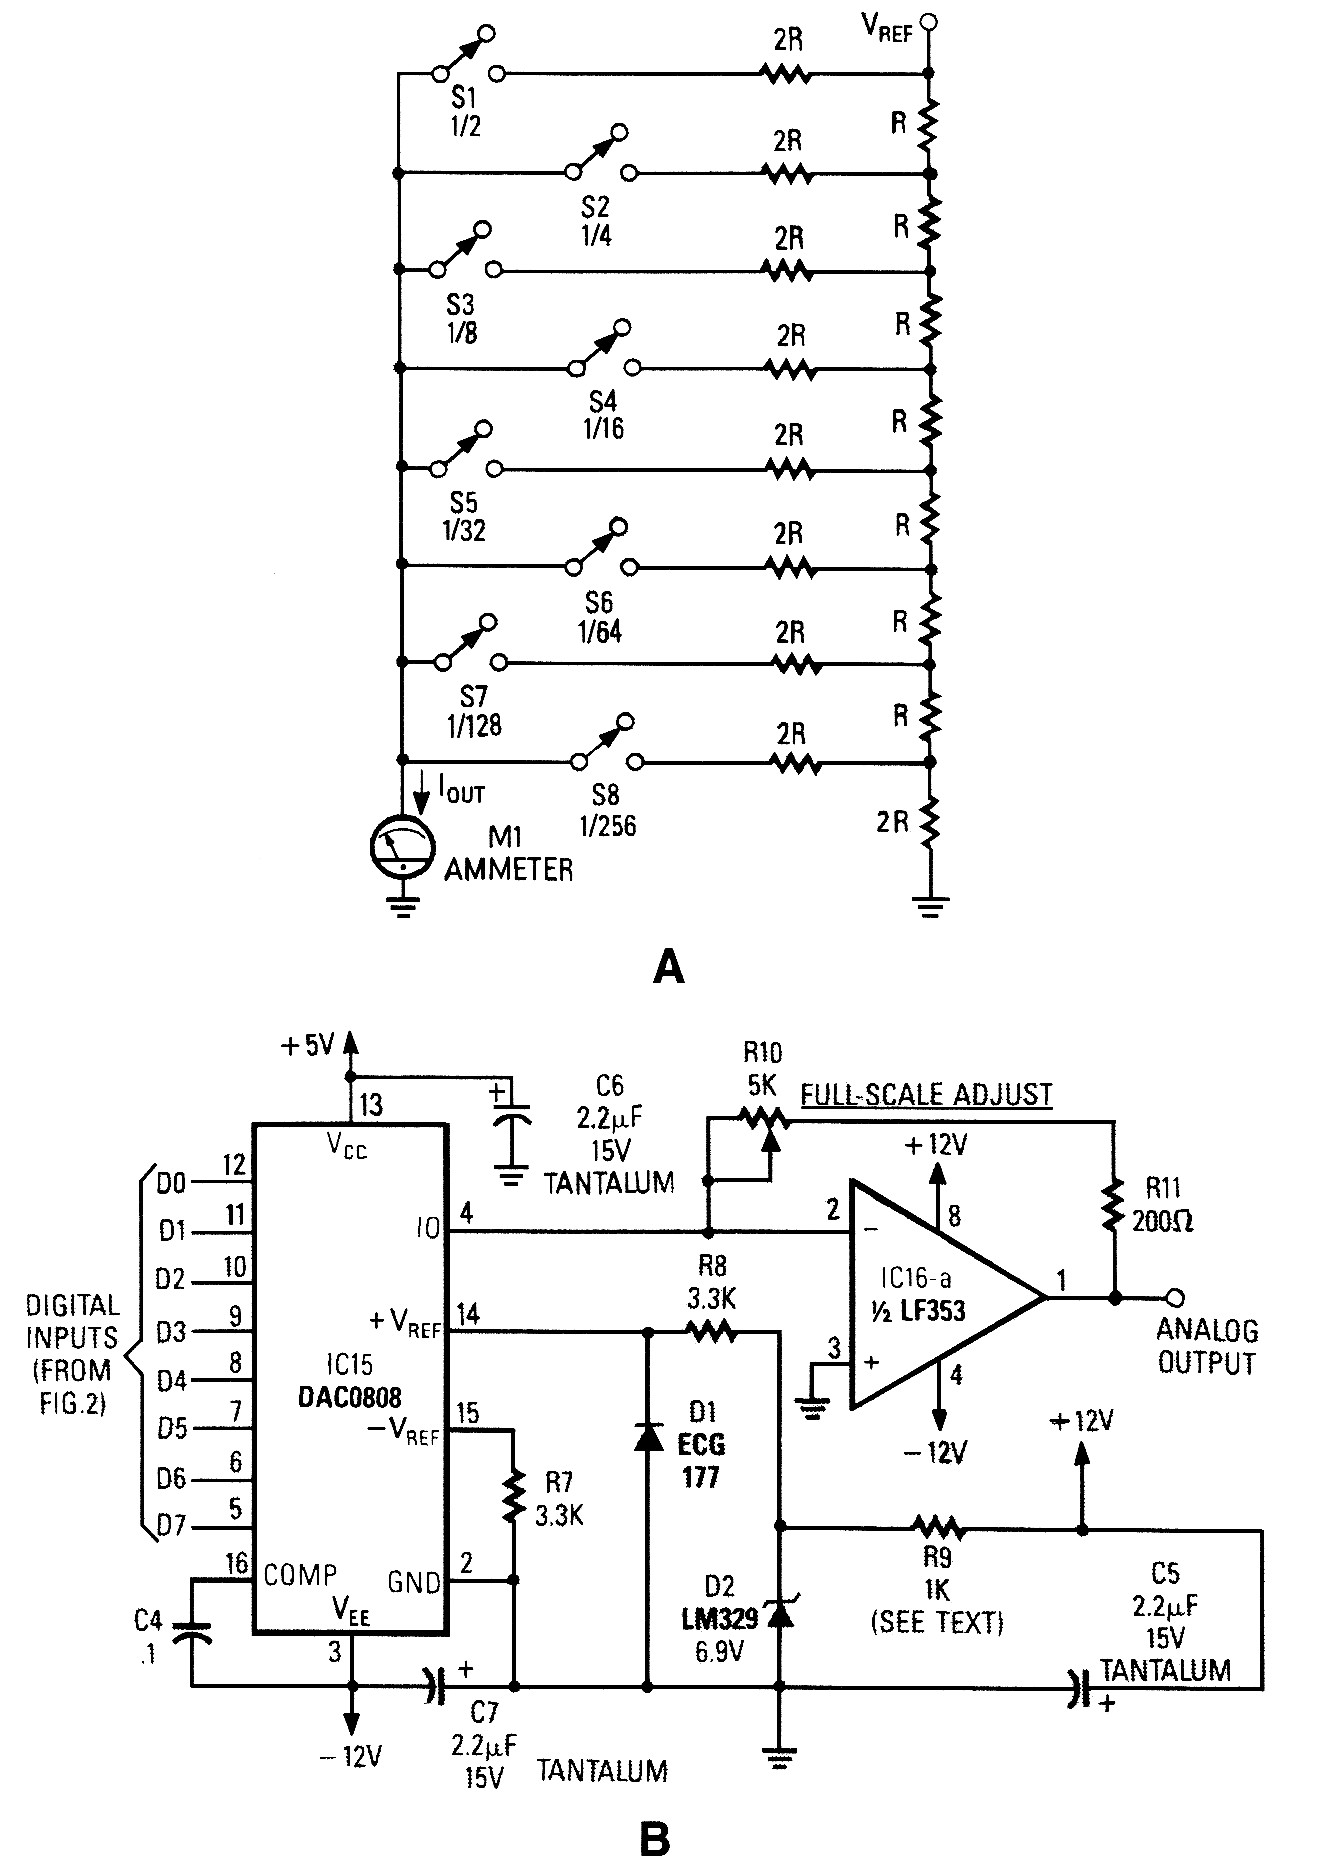 Digital to Analog Converter Circuit Diagram | Wiring ...